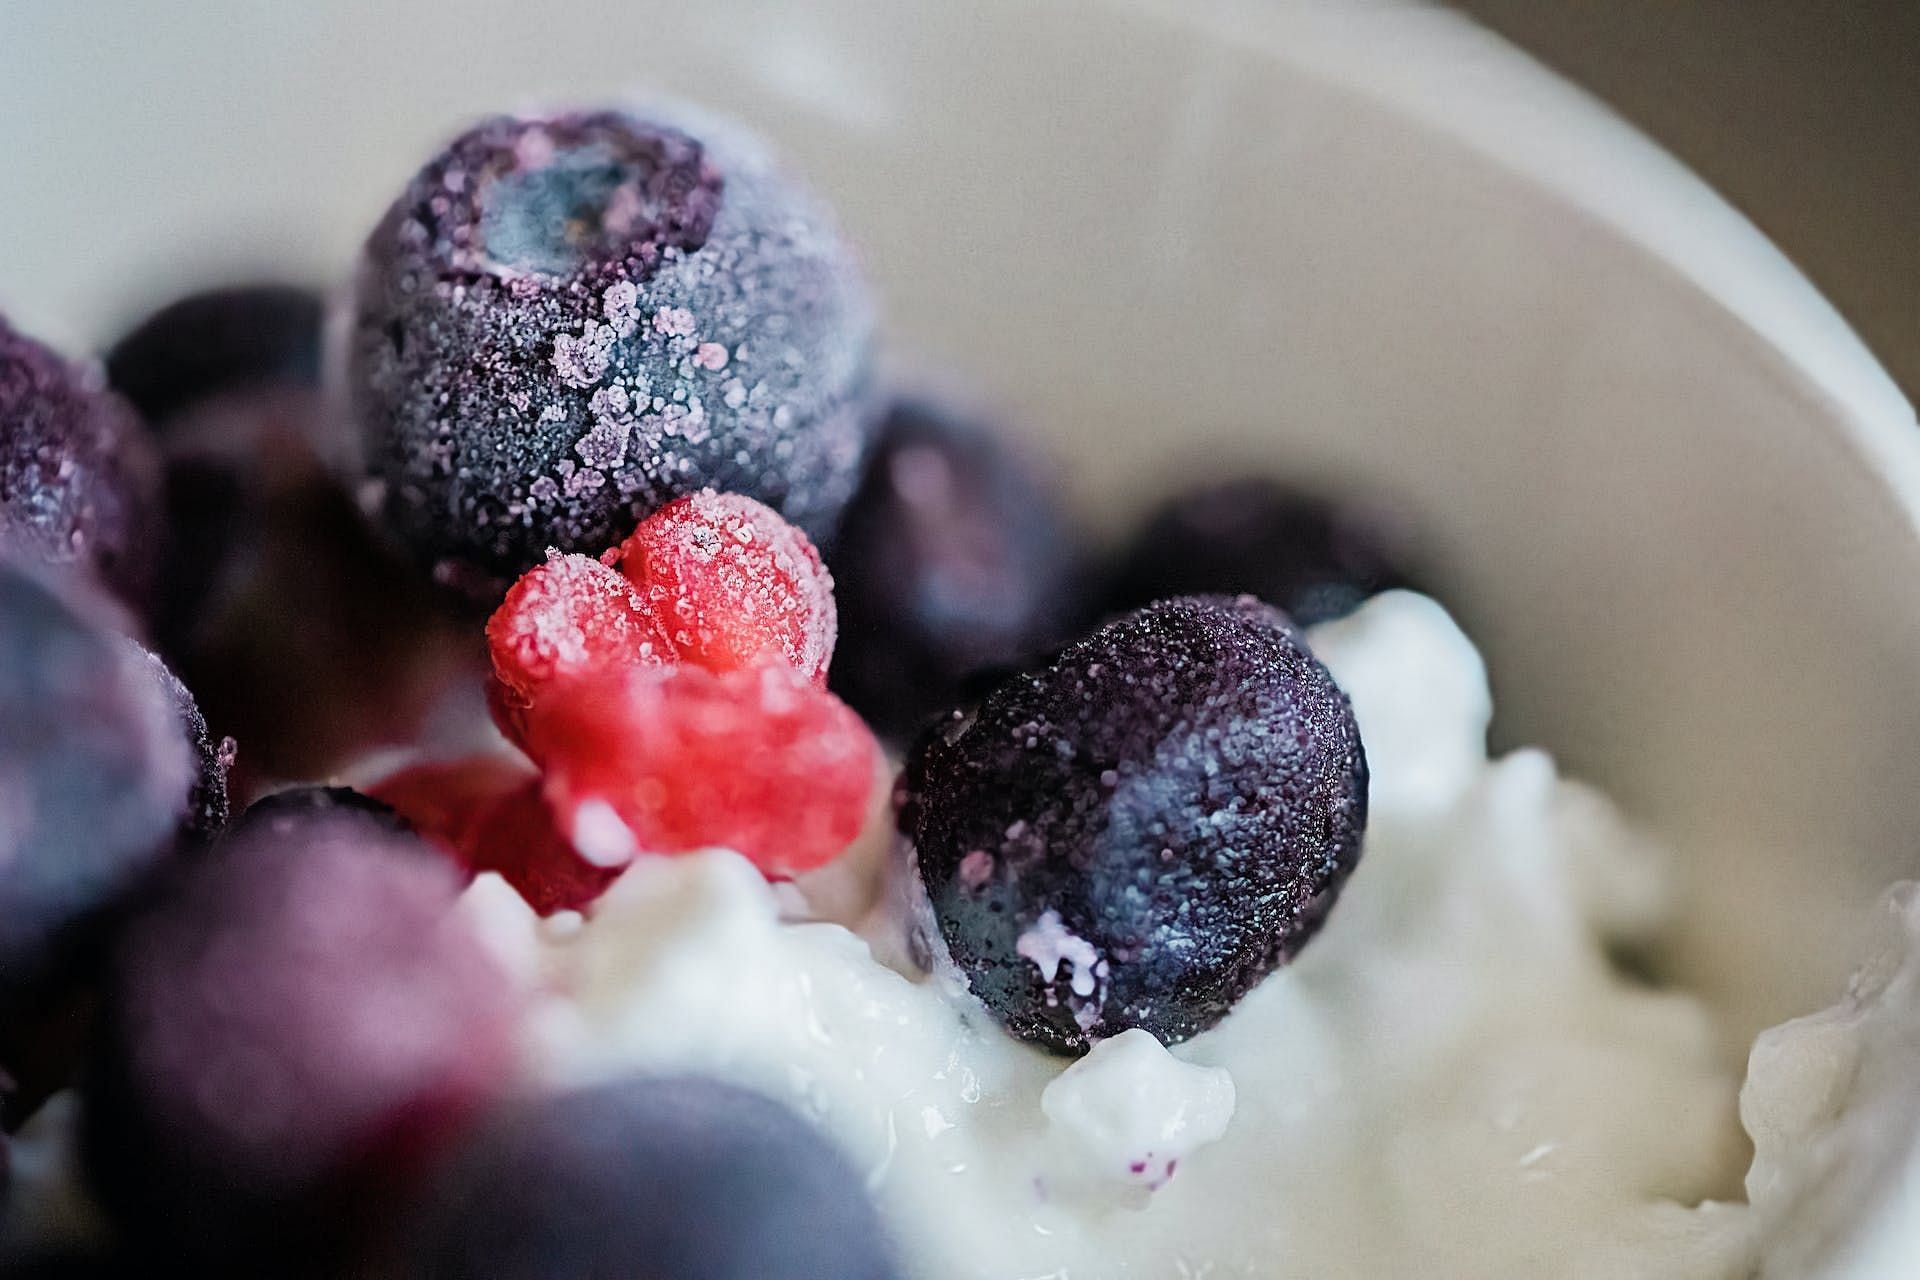 Frozen foods should not be consumed in breakfast. (Image via Pexels/Jessica Lewis)